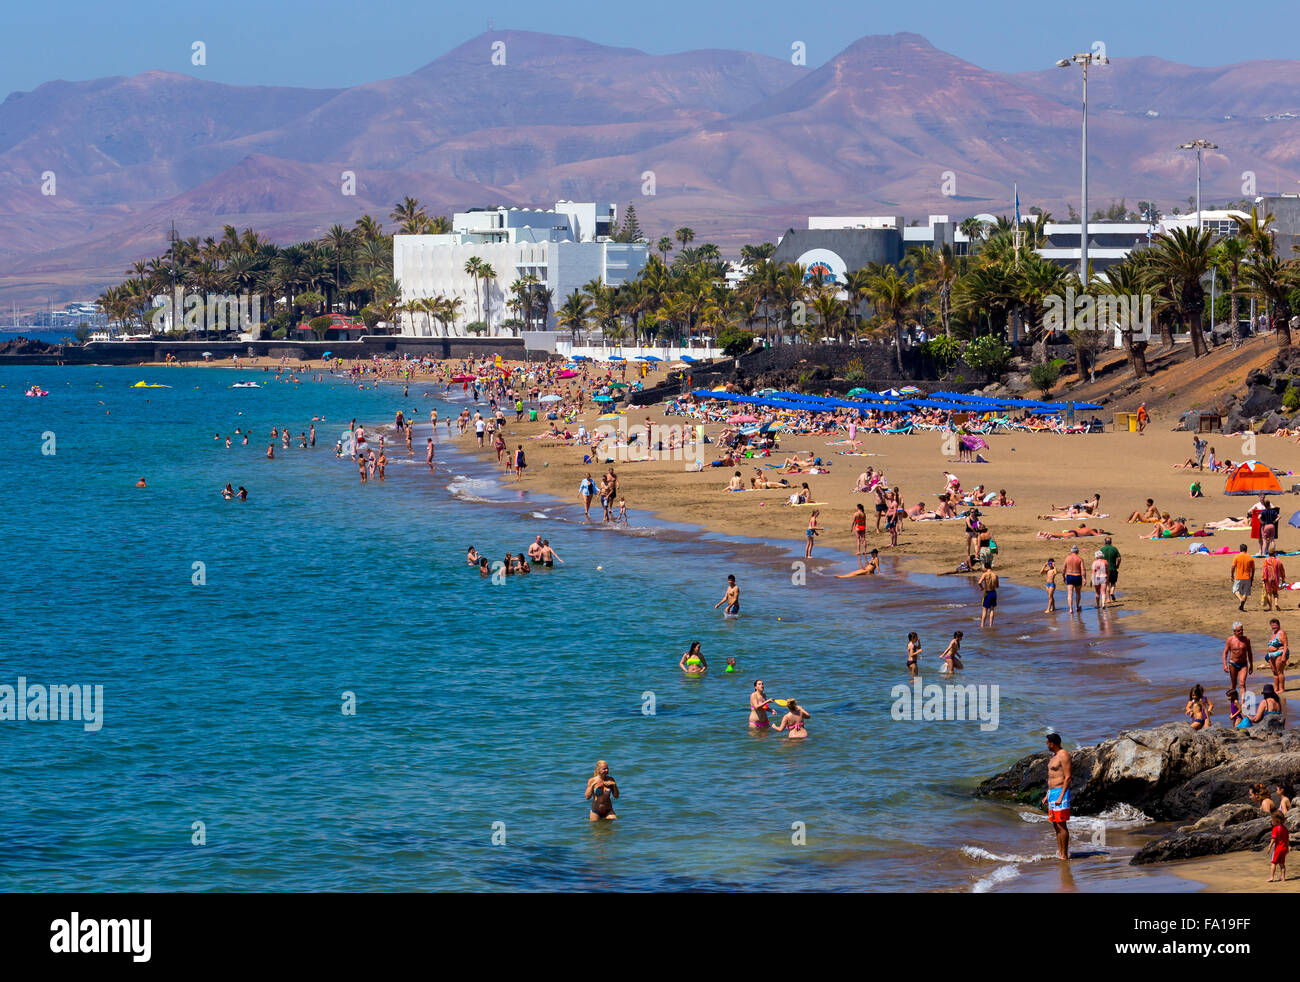 Playa Grande, la plage de la ville de Puerto del Carmen, Lanzarote, îles Canaries, Espagne, le sud de l'Europe Banque D'Images